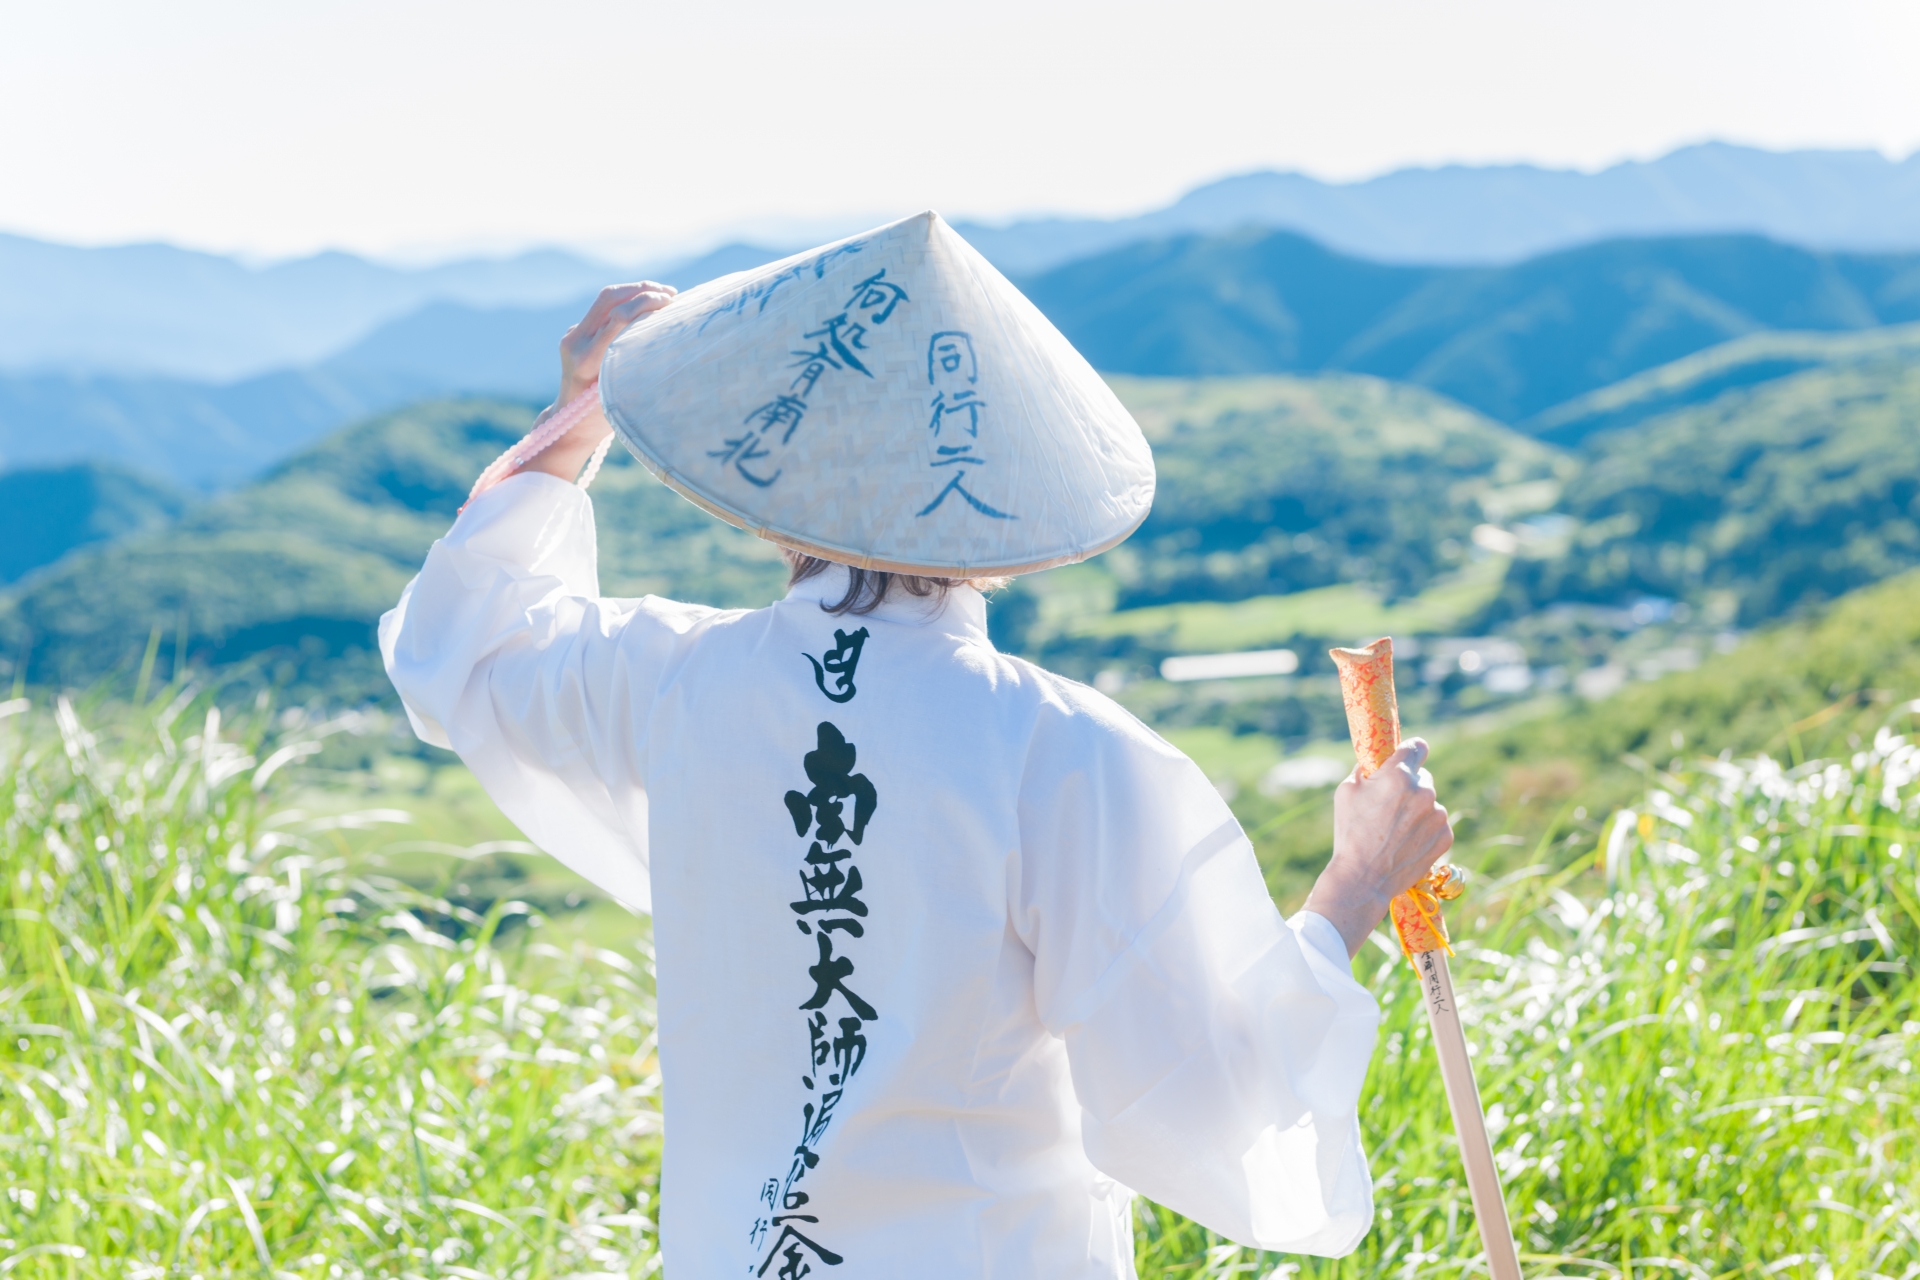 Shikoku 88 pilgrimage ohenro